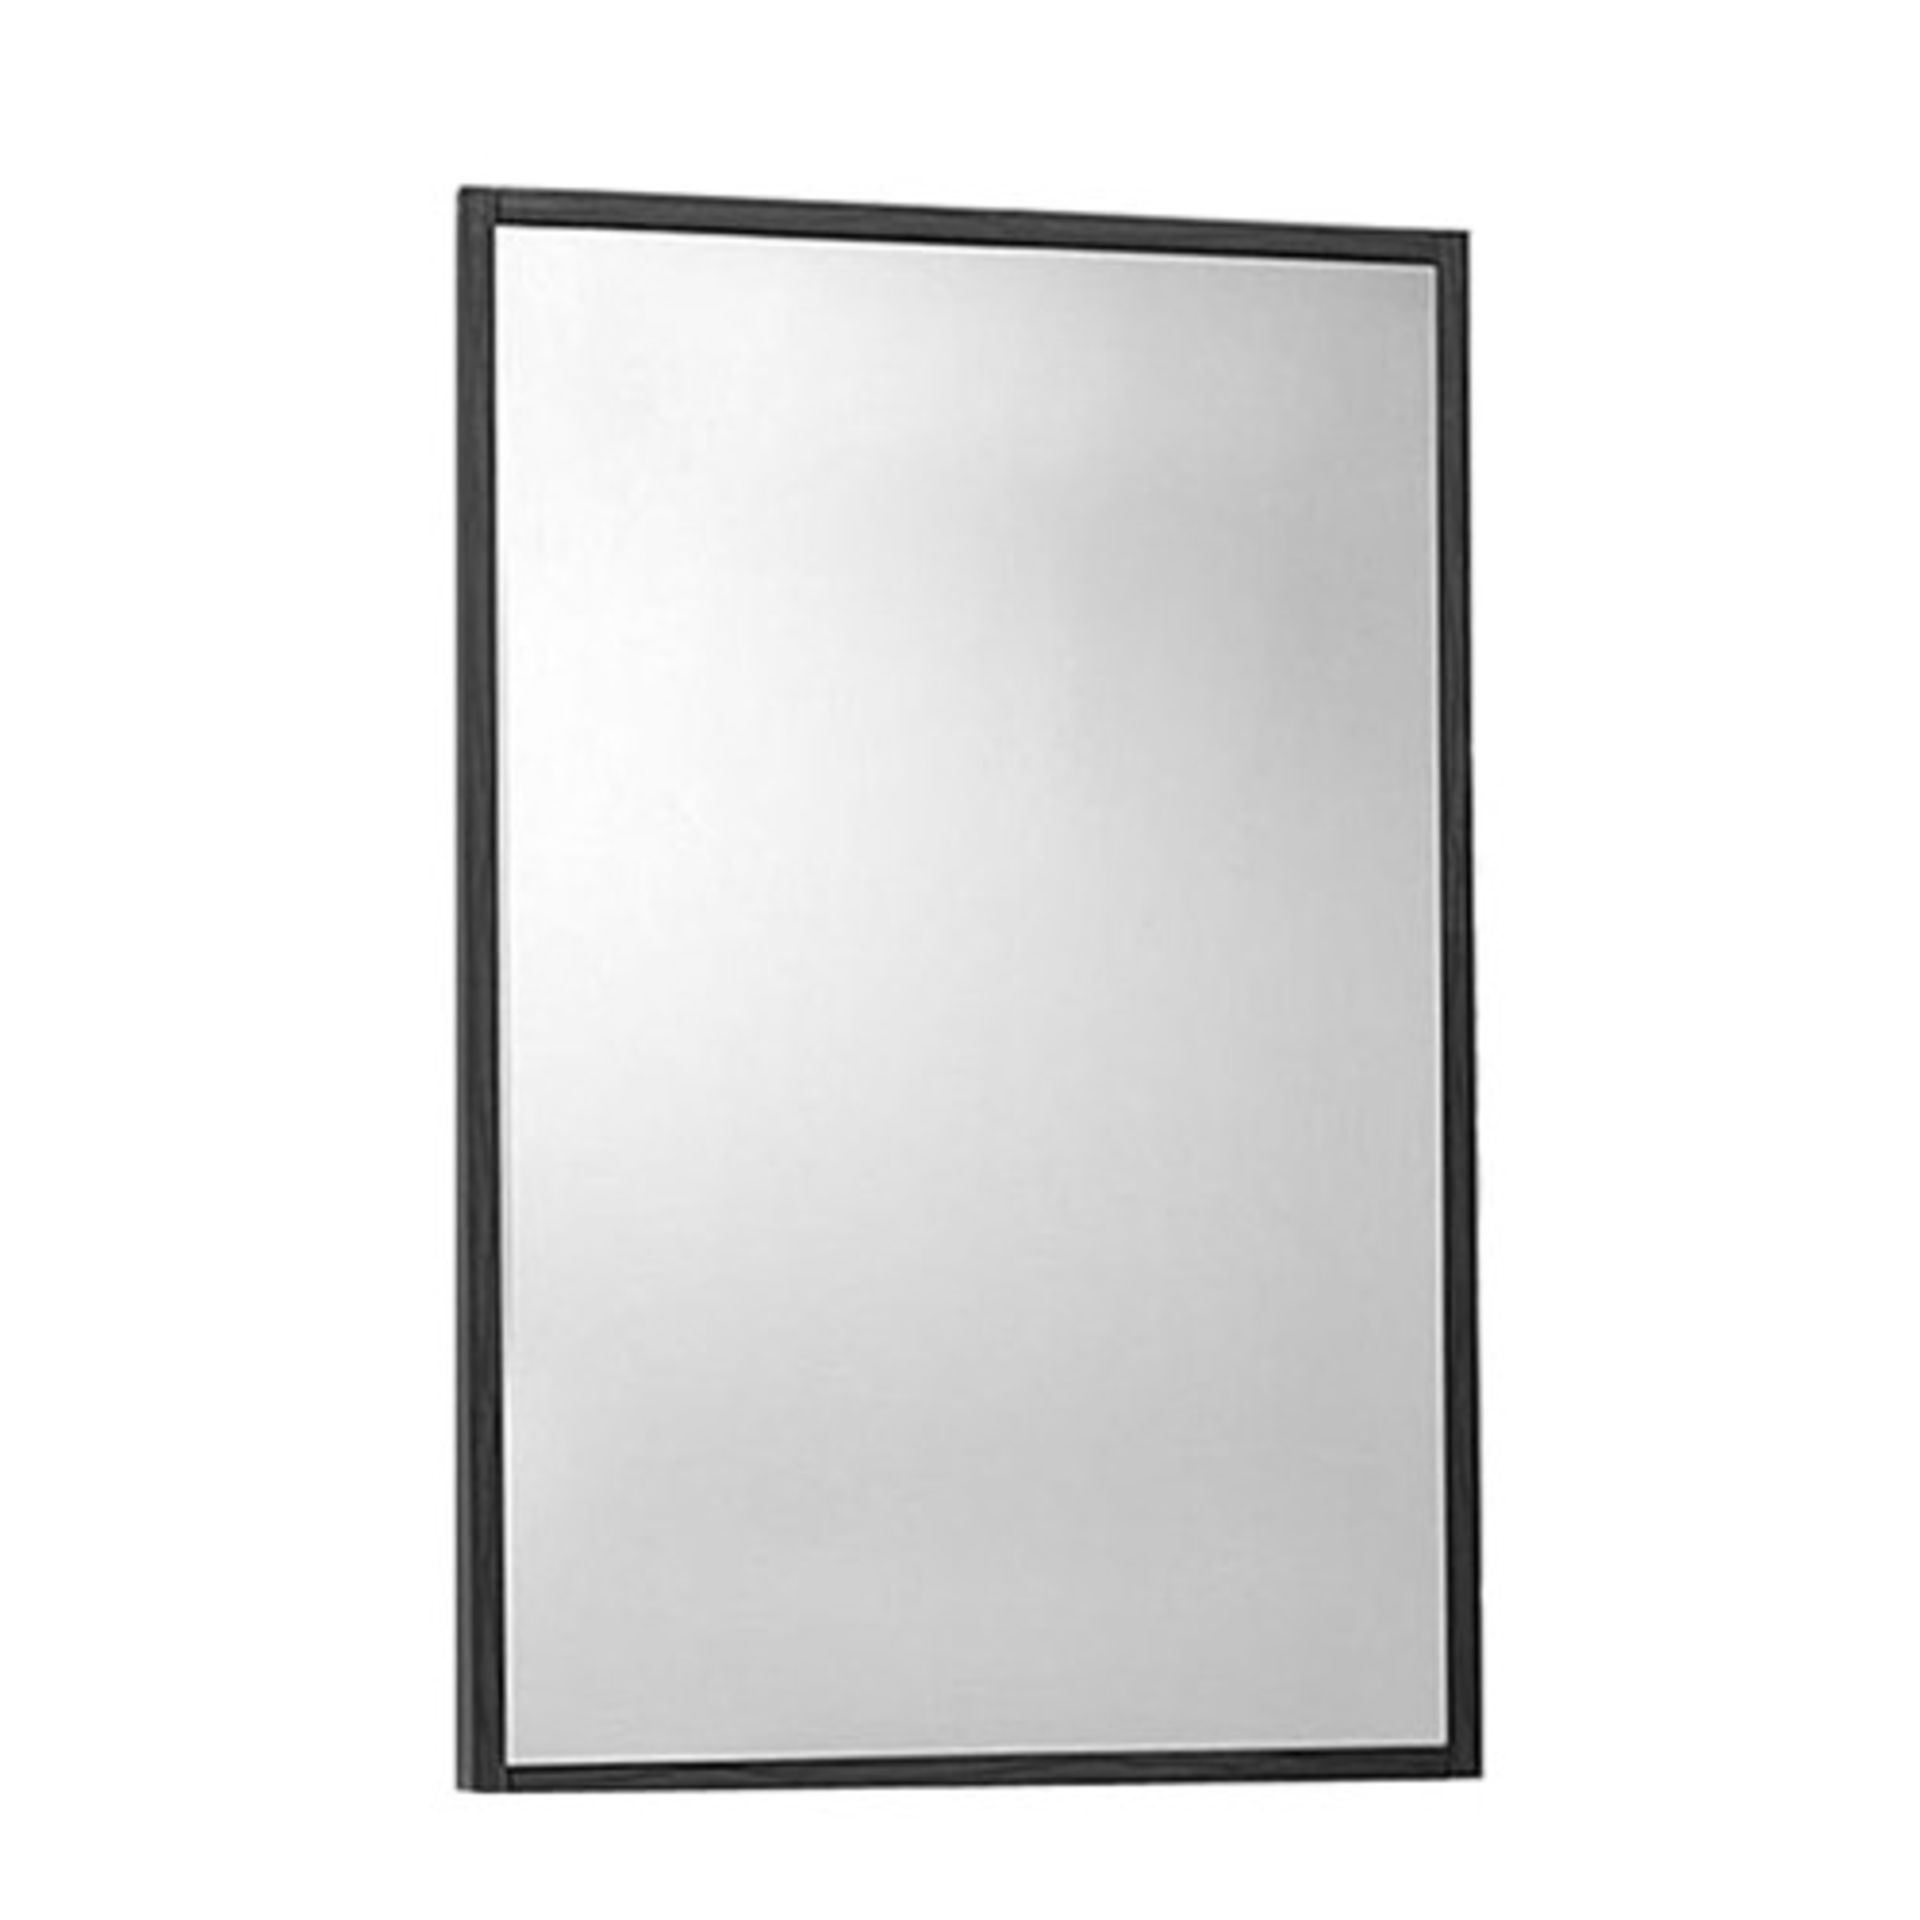 1 x Premier Glide Mirror - Walnut - New & Boxed Stock - 50x80cm - Ref: LQ003 - Location: Cheadle SK8